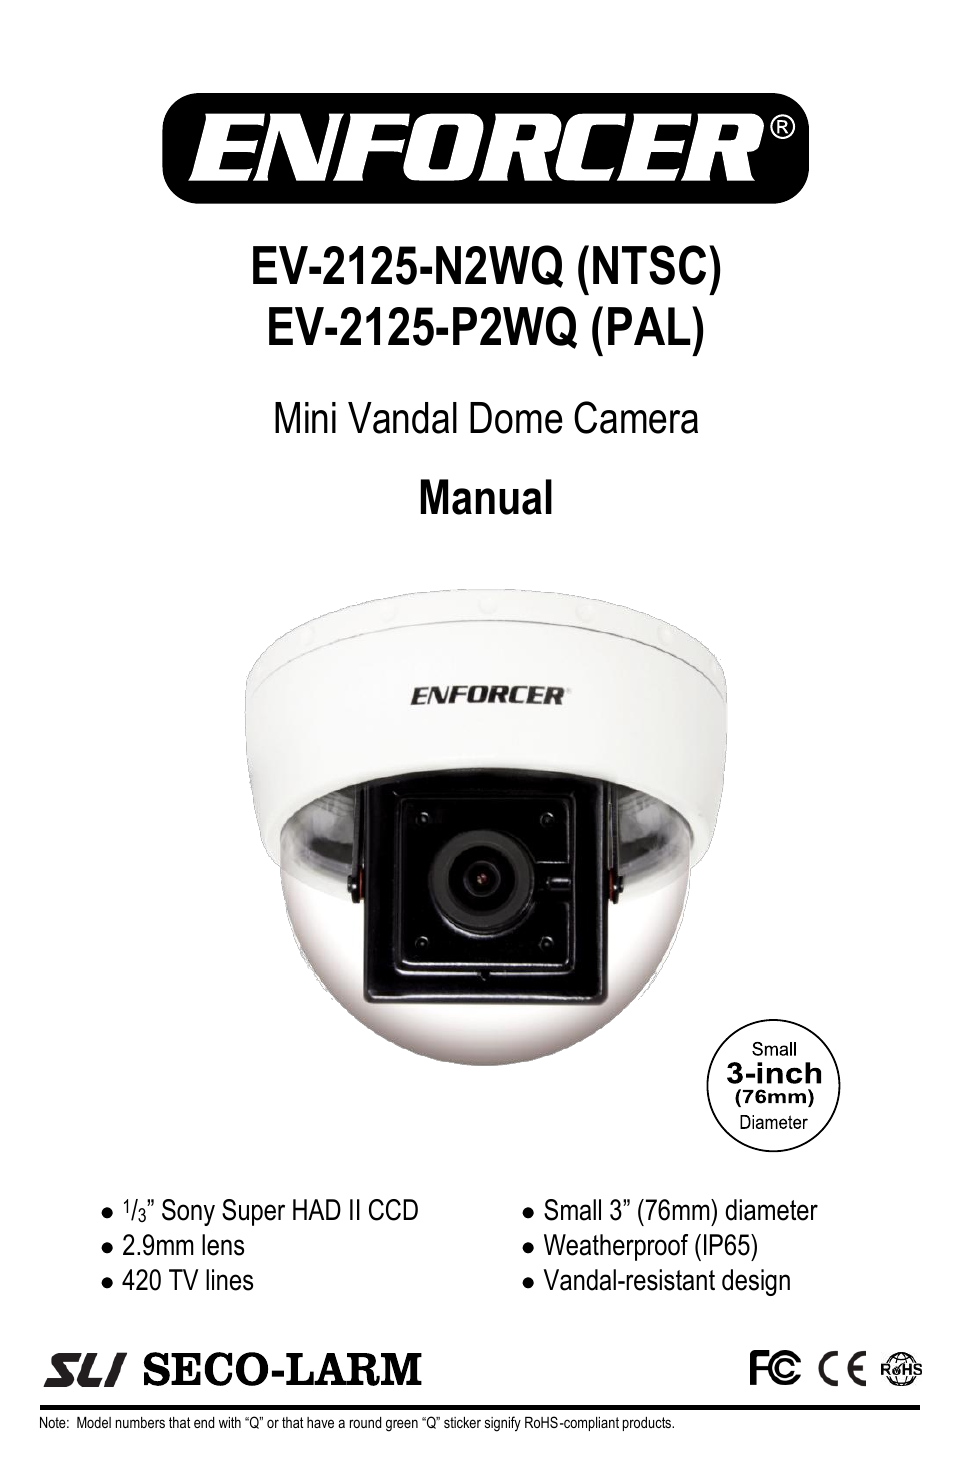 Mini Vandal Dome Camera EV-2125-P2WQ